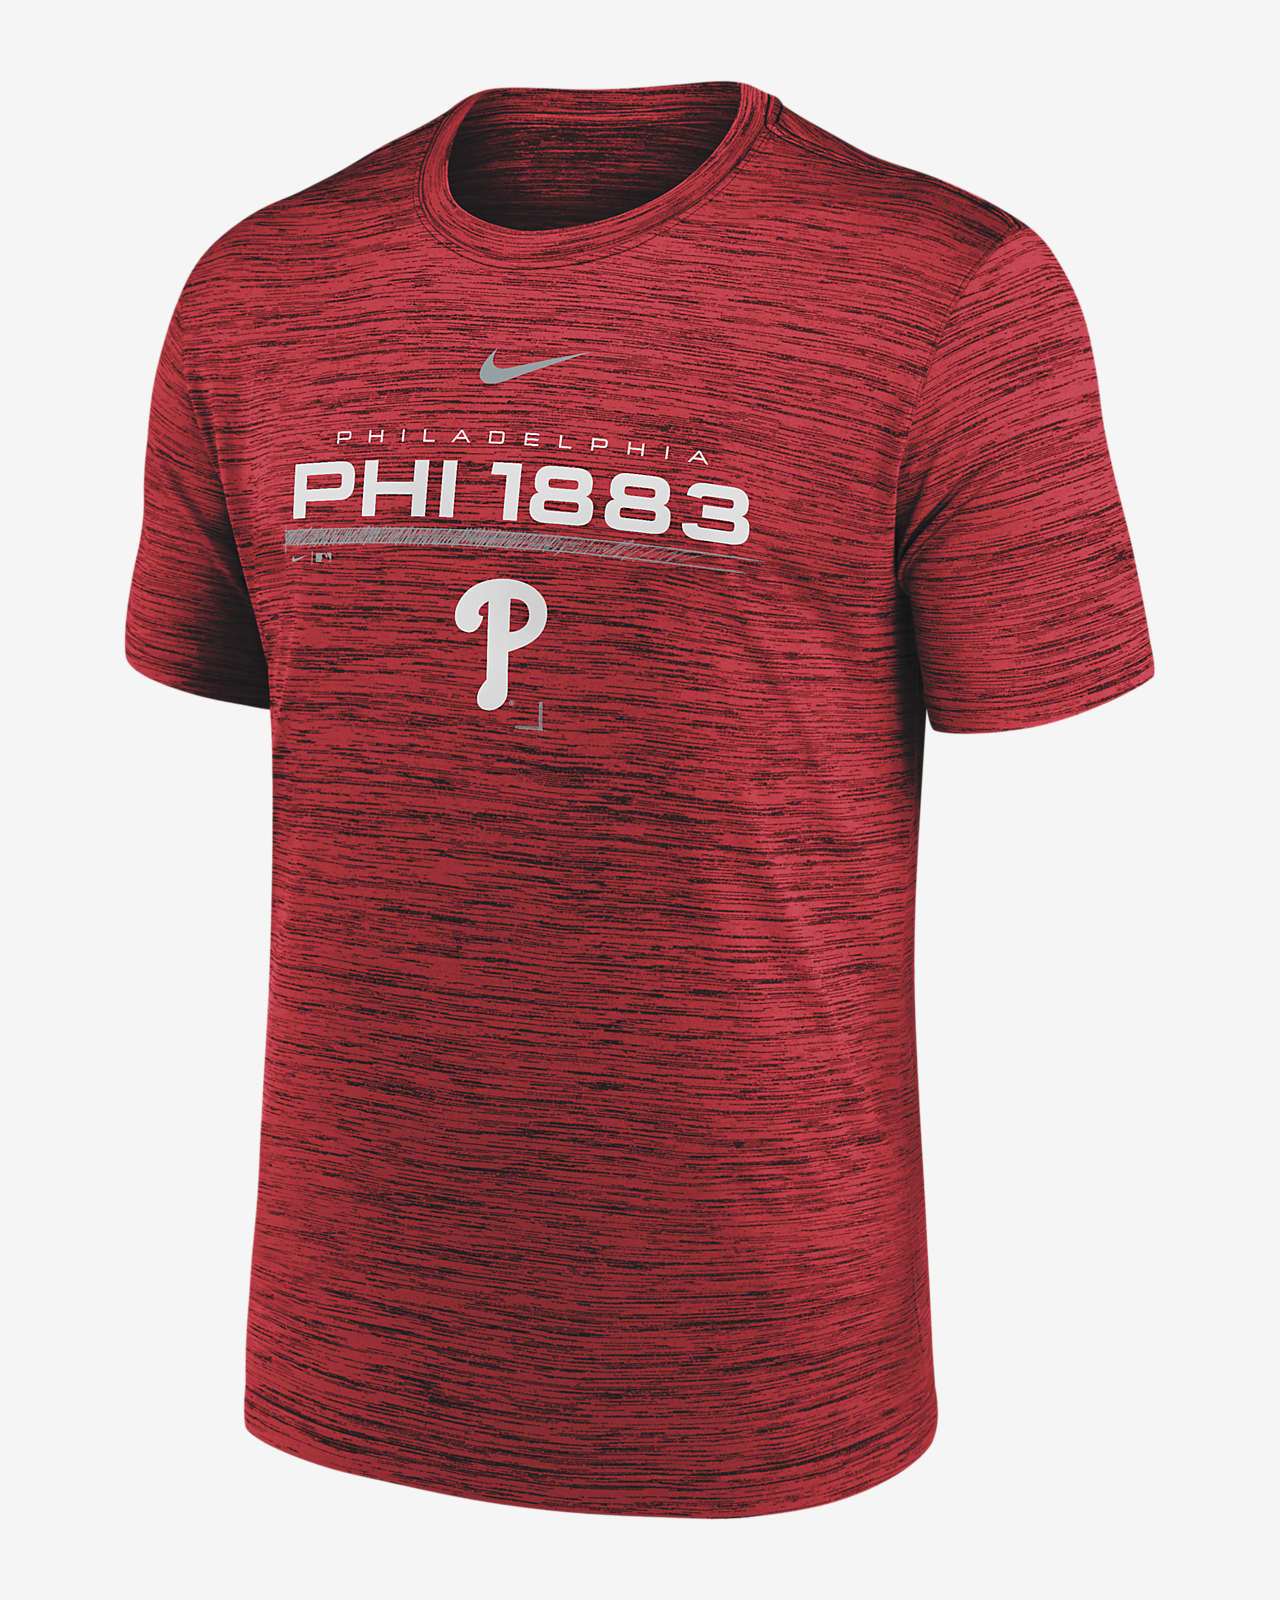 Nike Velocity Team (MLB Philadelphia Phillies) Men's T-Shirt